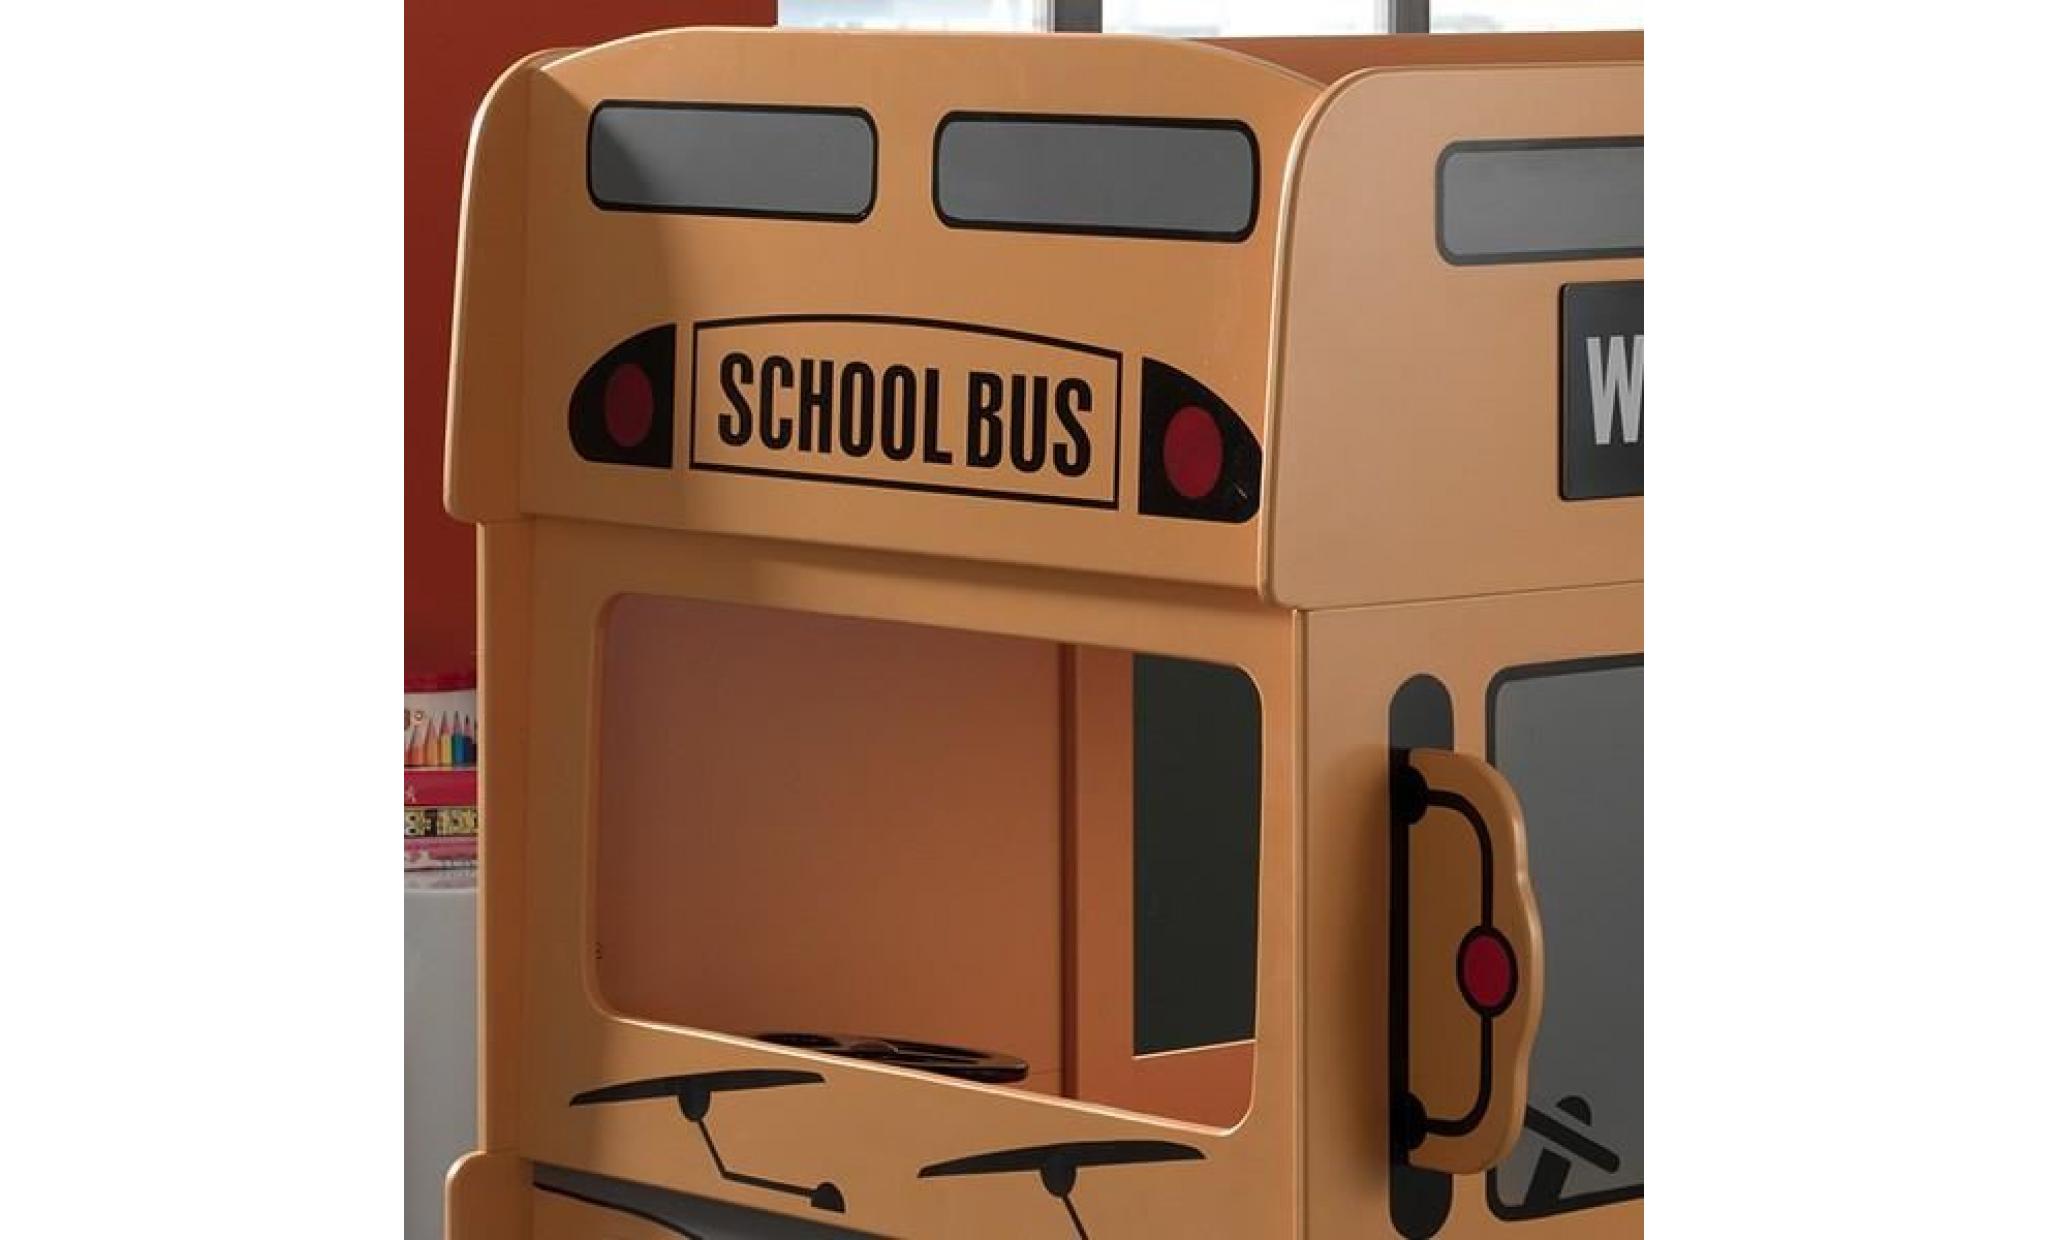 lit superposé bus   school   l 215 x l 100 x h 132 cm pas cher